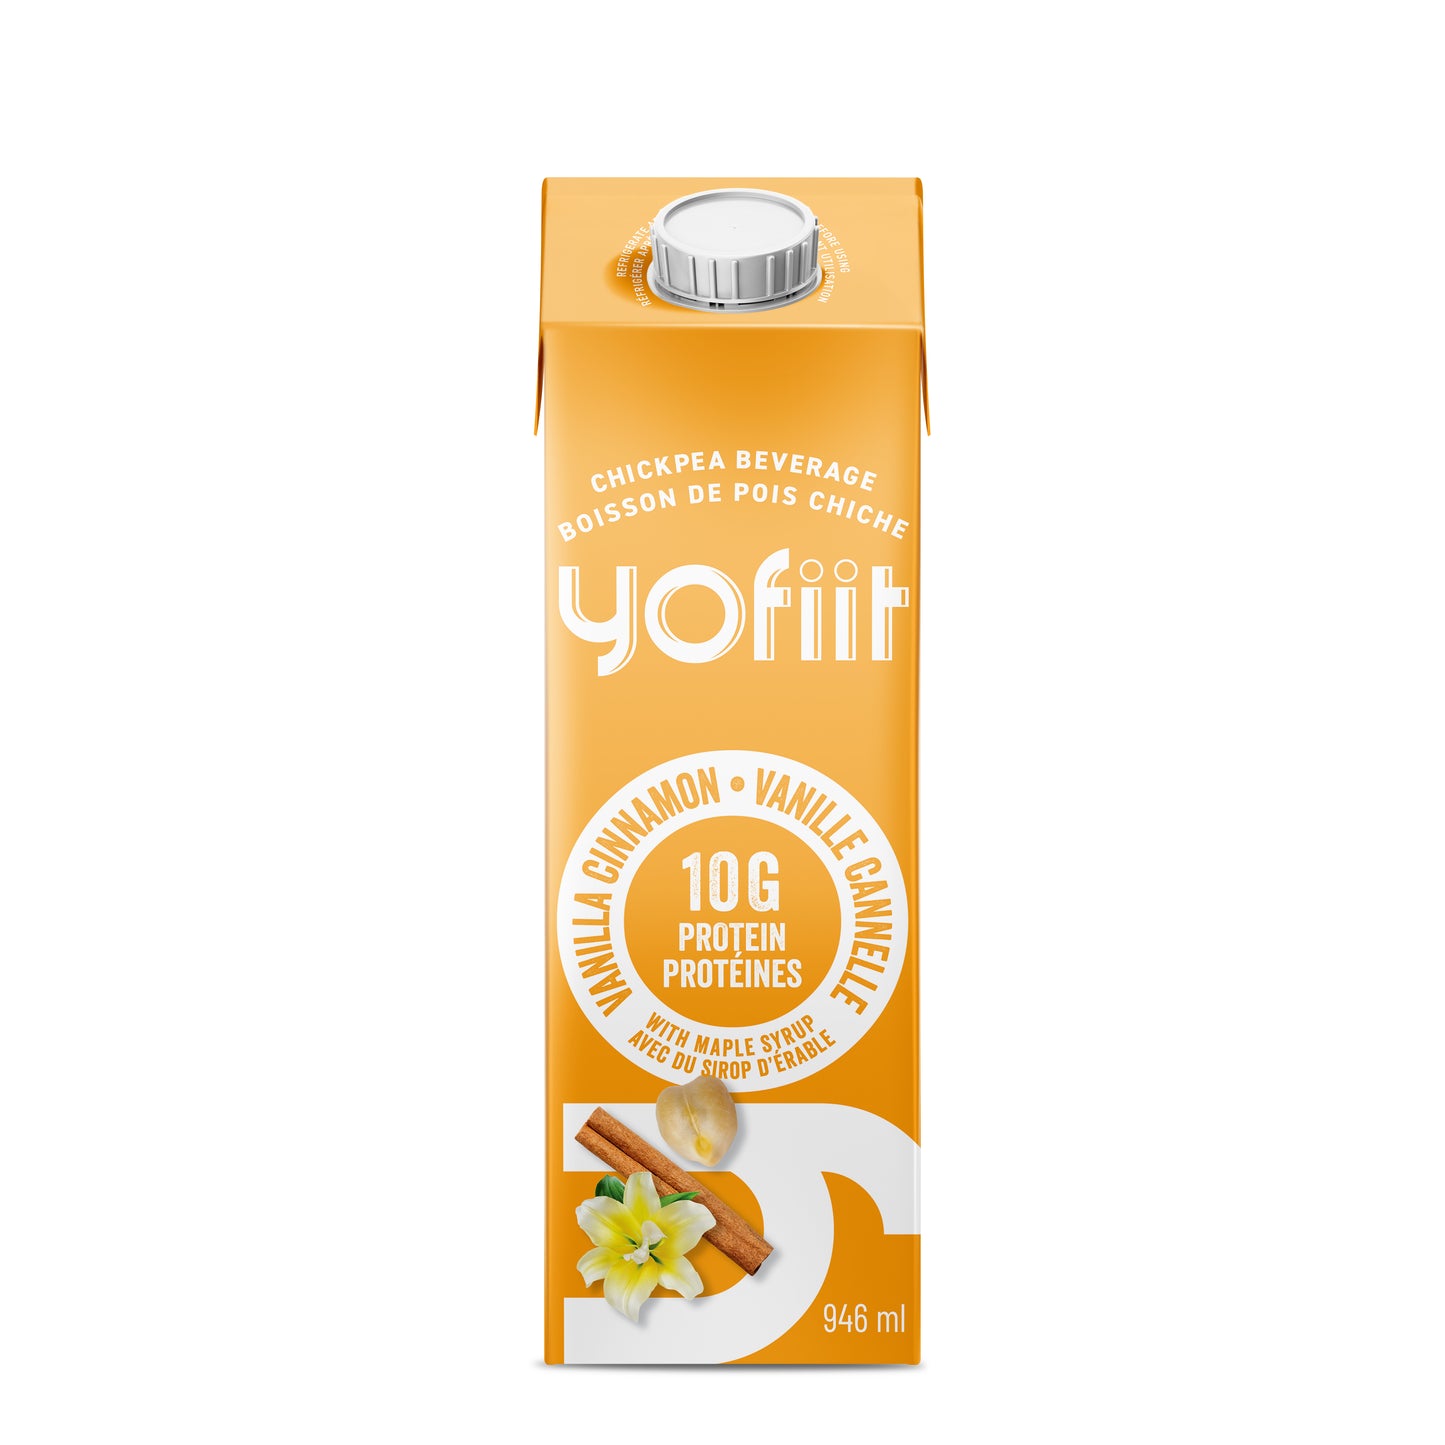 Yofiit – Lait de pois chiche riche en protéines w. lin (vanille cannelle)-12 cartons